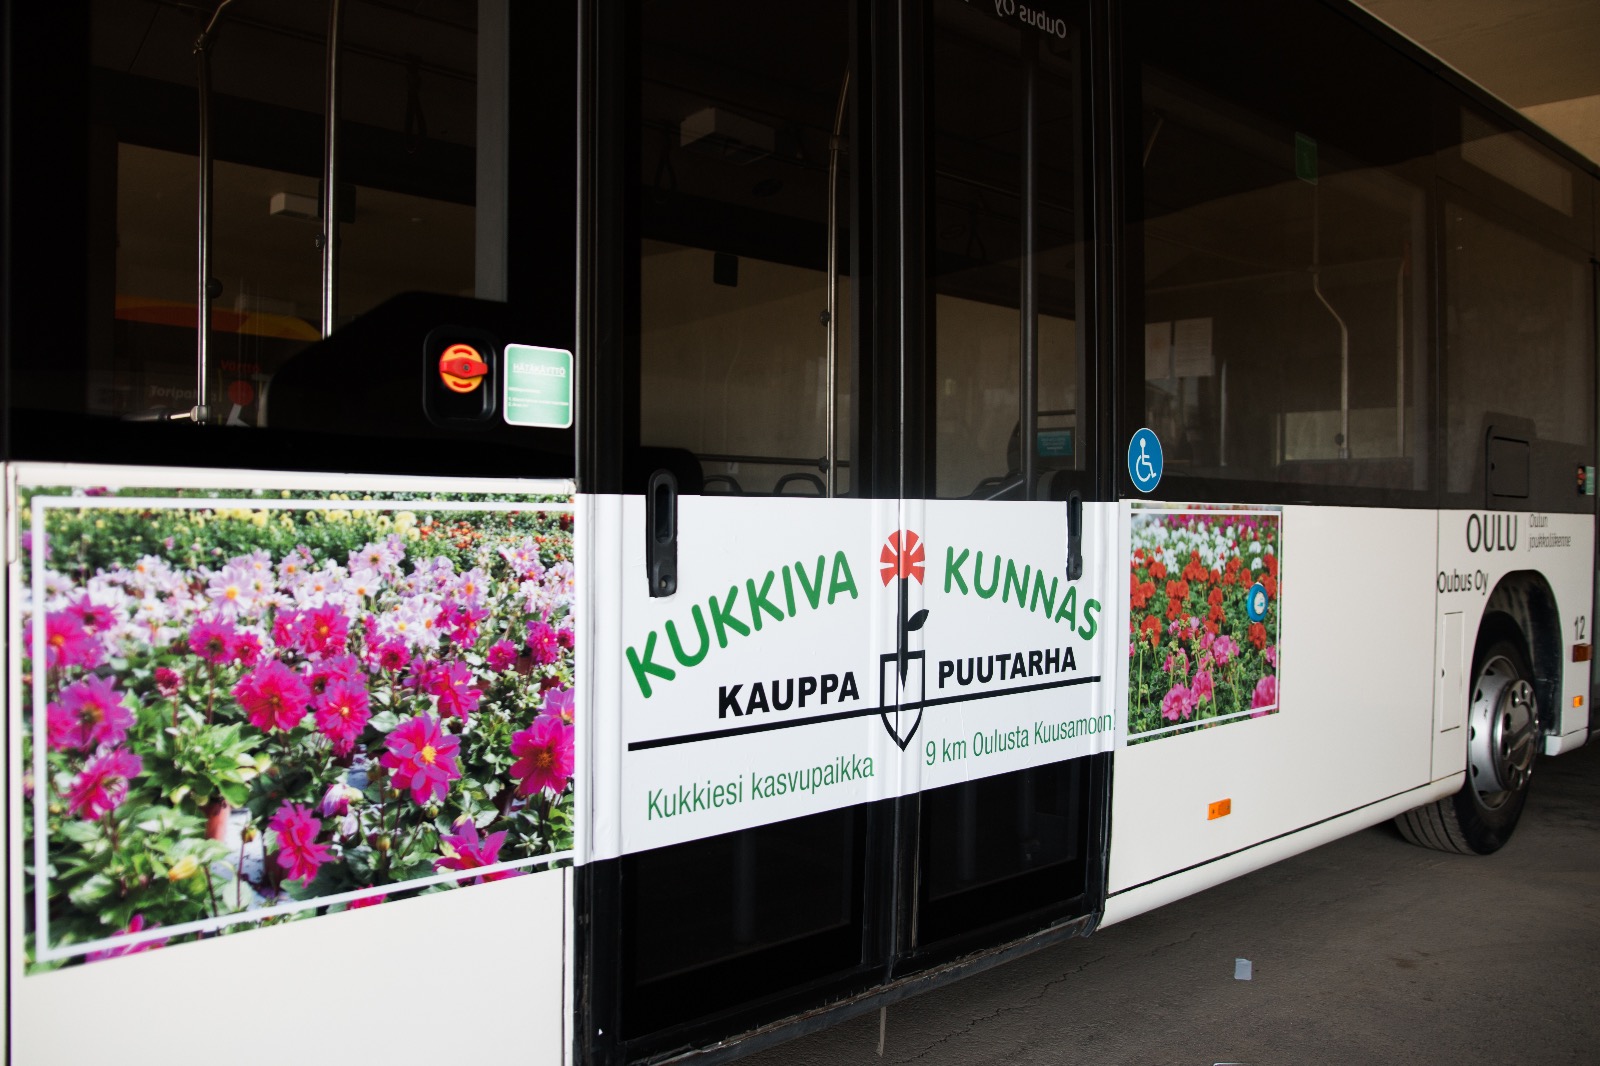 Bussimainonta | Kylkiteippaukset | Oulu-Kempele 7